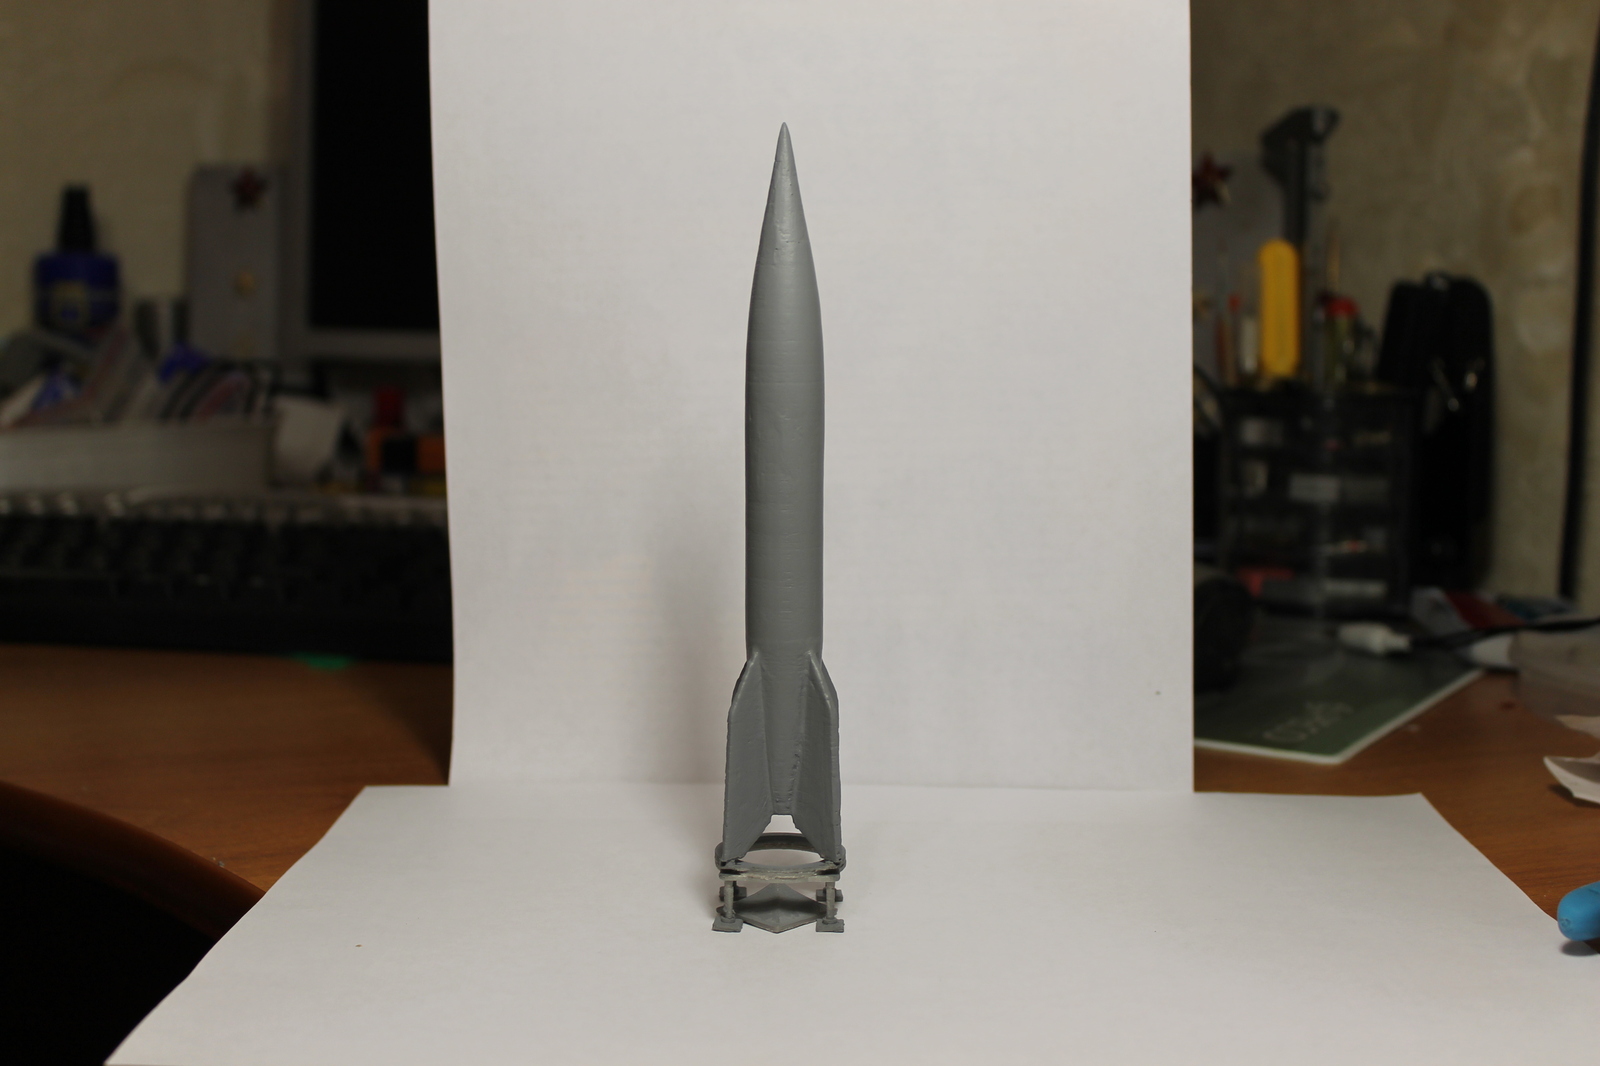 R-1/V-2 rocket model modeling and 3d printing. - My, p-1, V-2, Rocket, 3D печать, 3D modeling, Hobby, Longpost